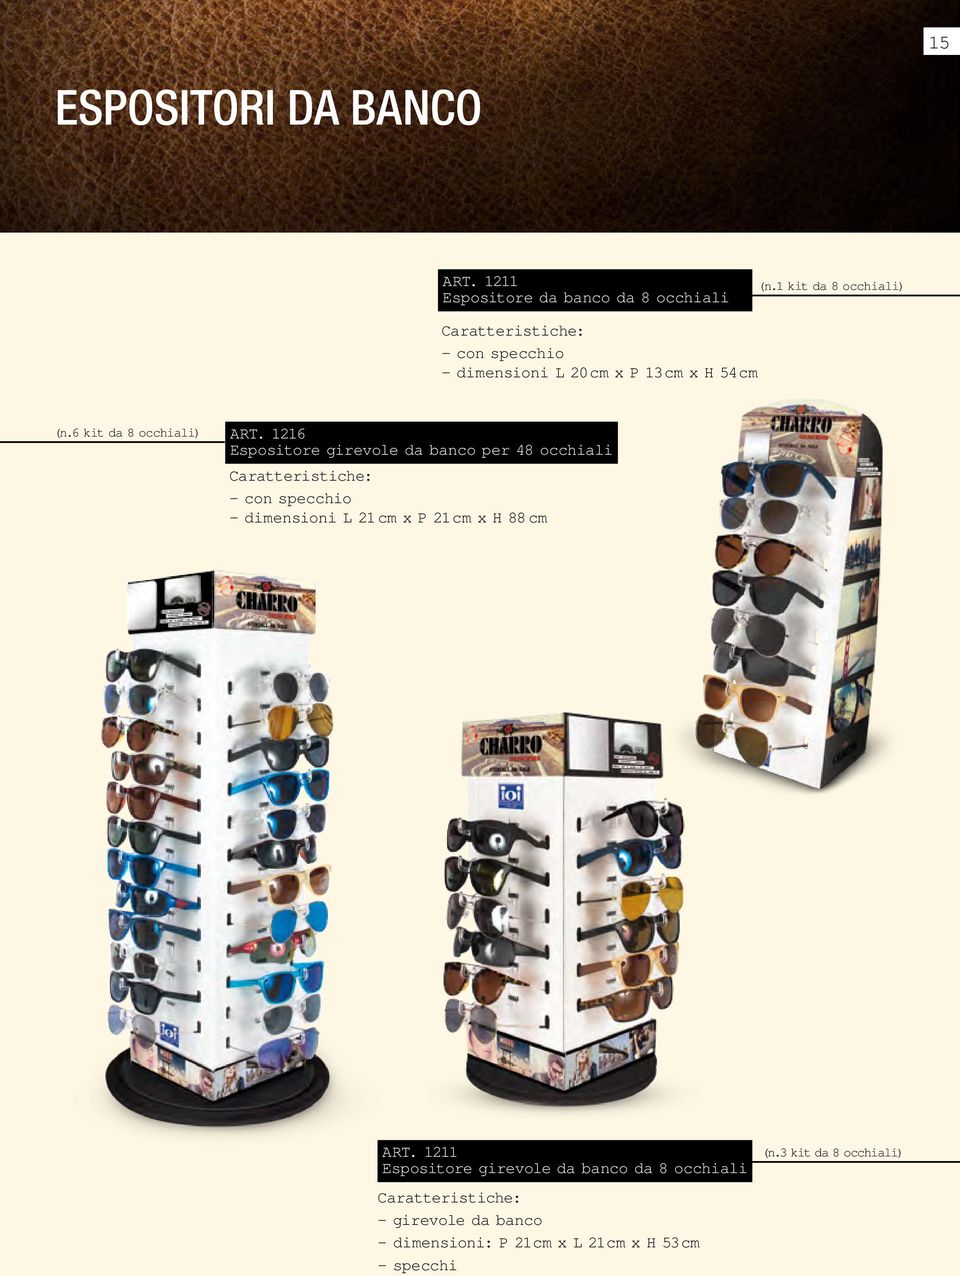 1216 Espositore girevole da banco per 48 occhiali Caratteristiche: - con specchio - dimensioni L 21 cm x P 21cm x H 88